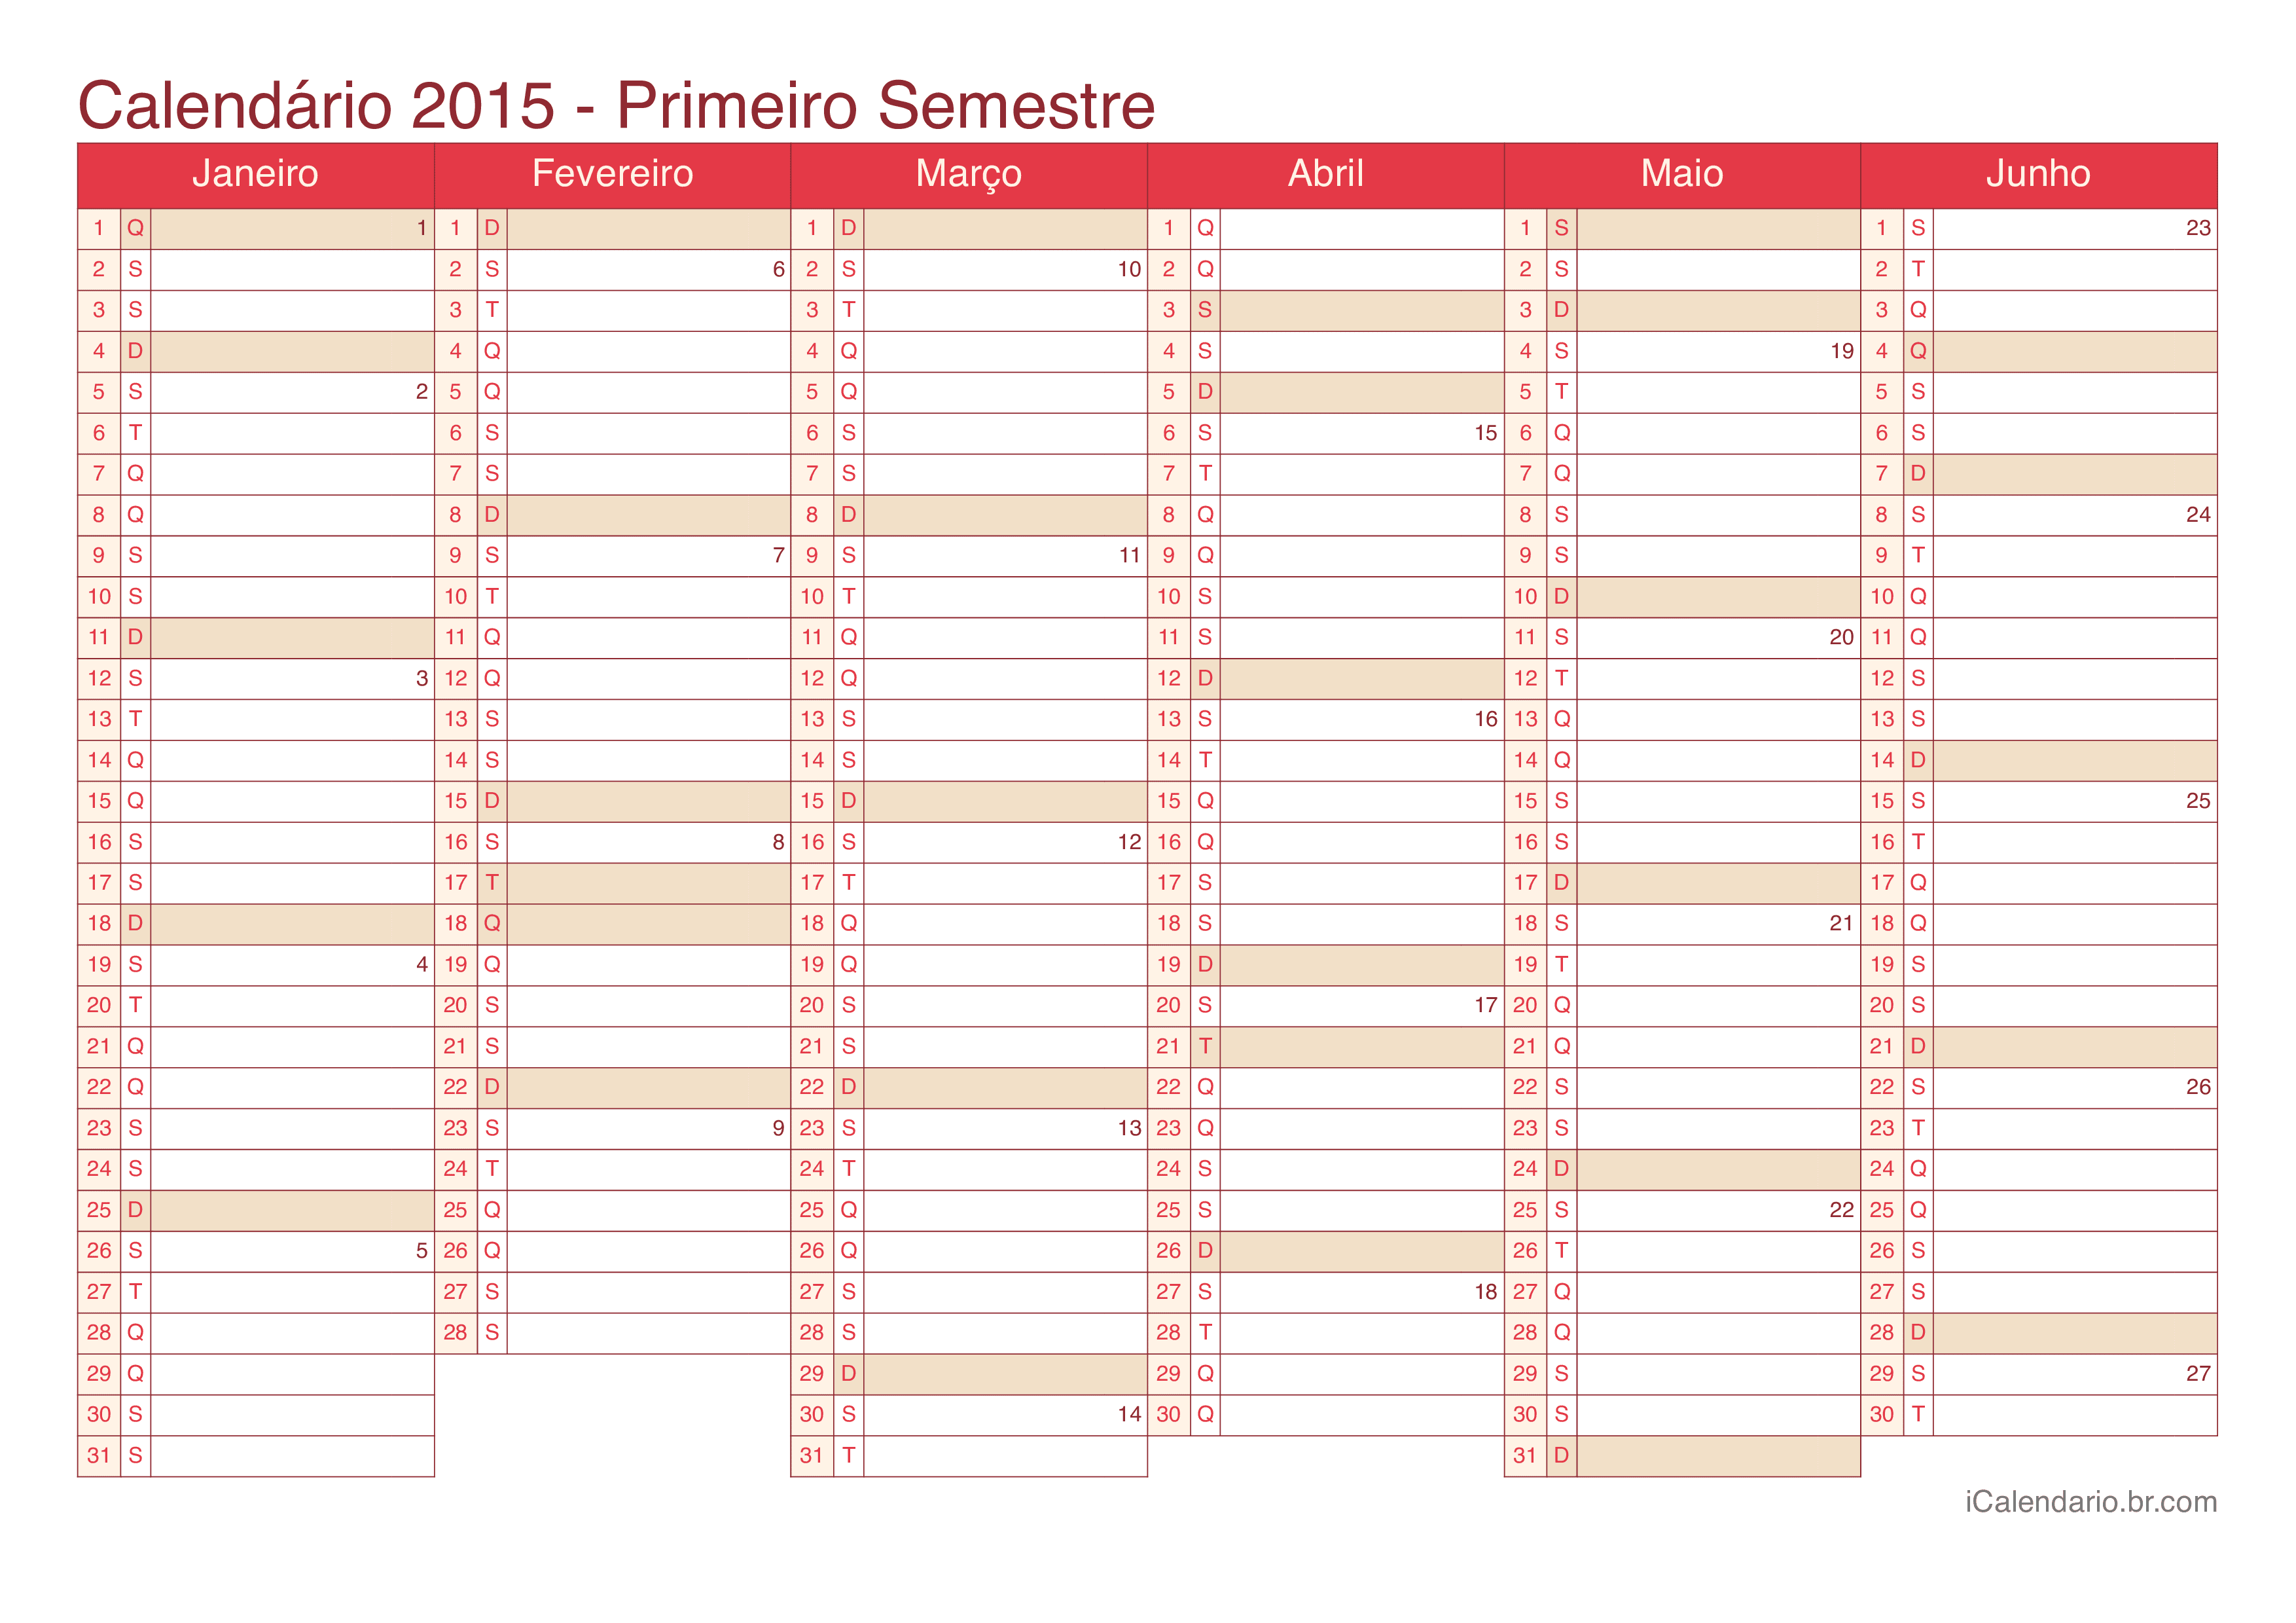 Calendário por semestre com números da semana 2015 - Cherry